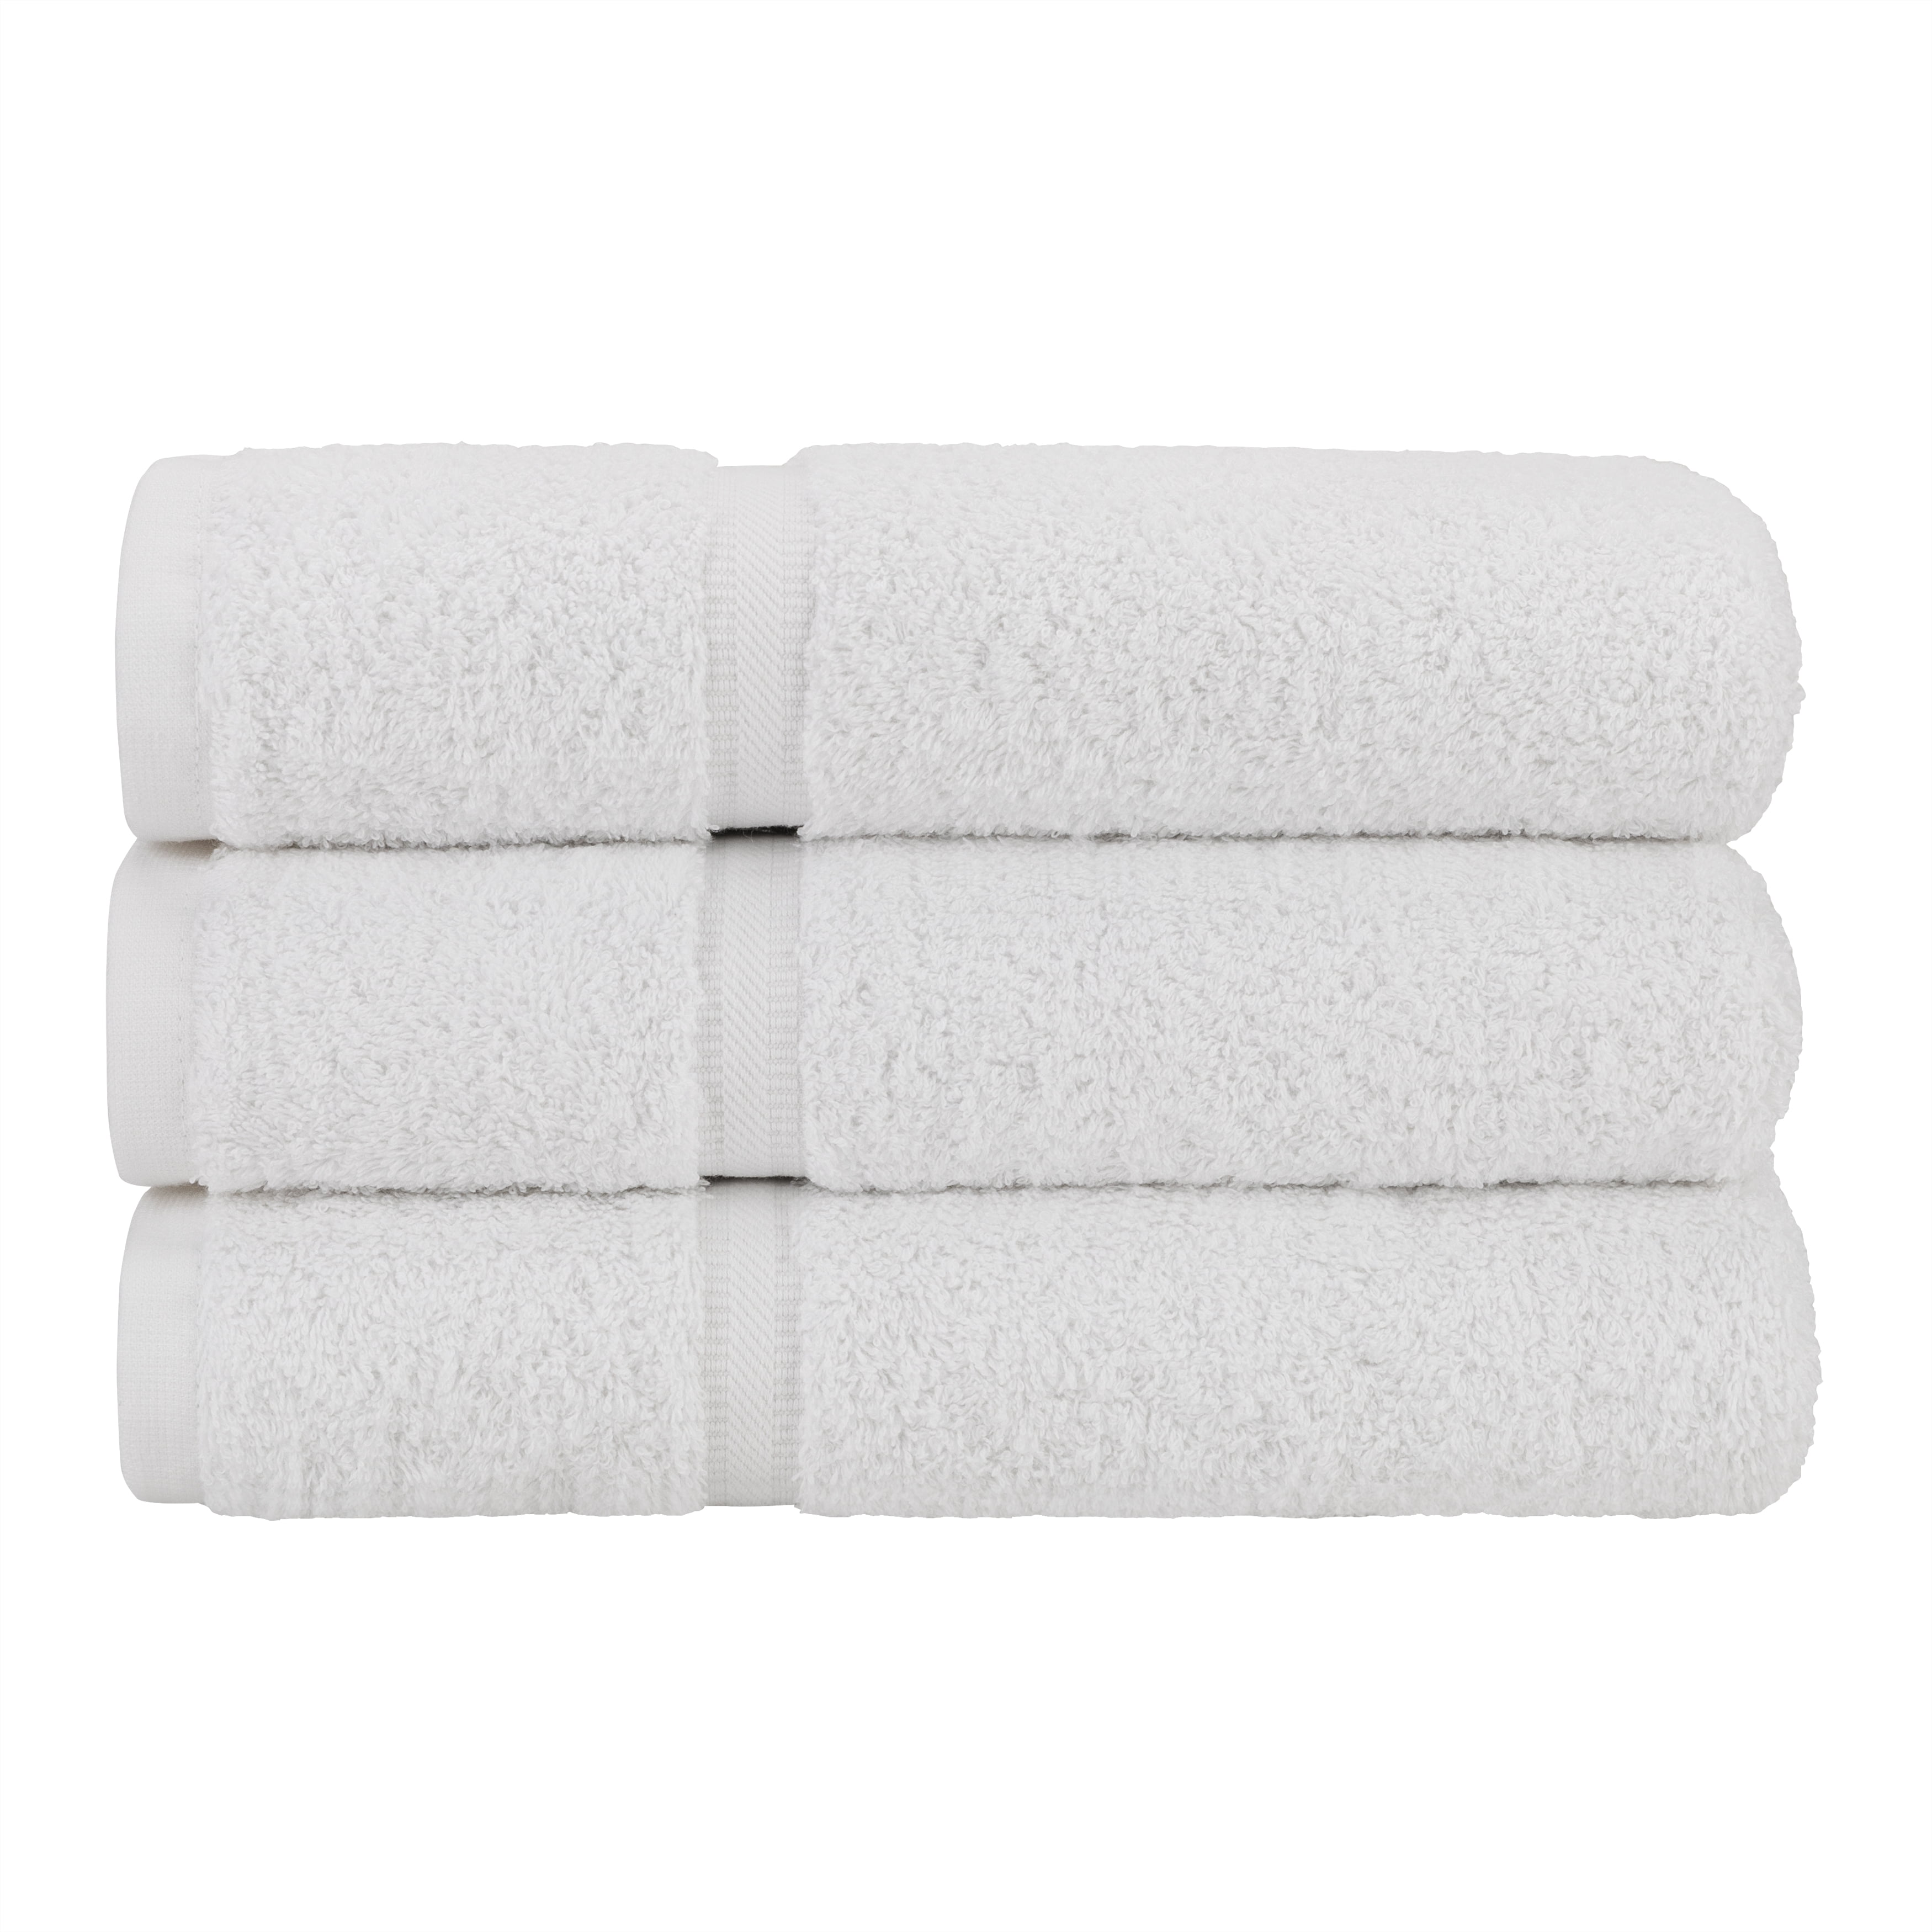 Luxury Bath Sheet, 100% ring Spun Cotton – Buy In Bulk